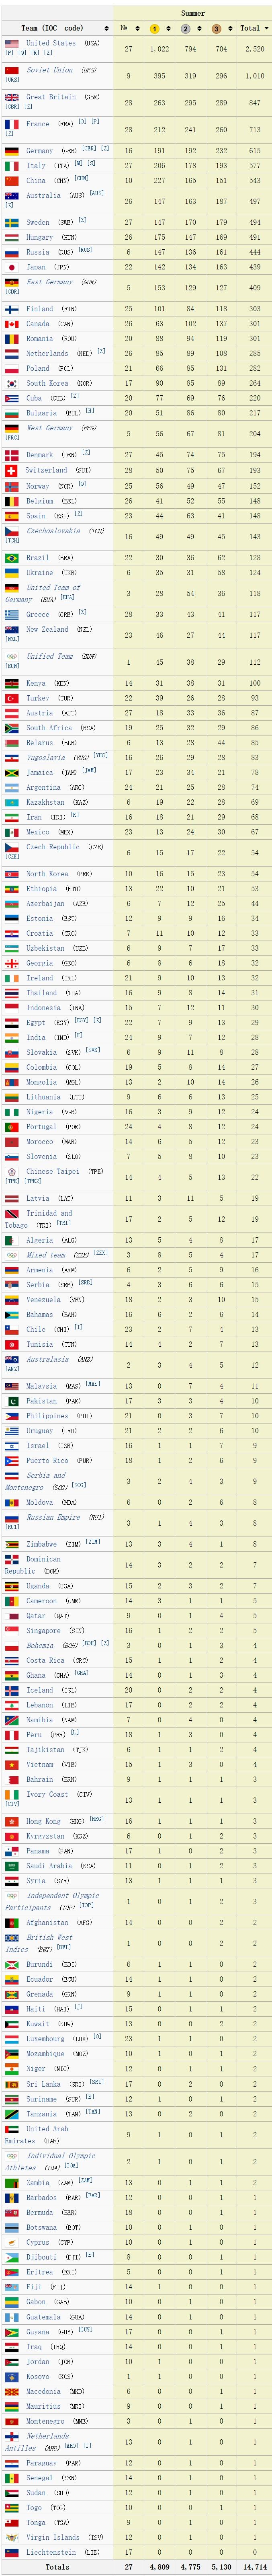 中国历届奥运会金牌总数的简单介绍